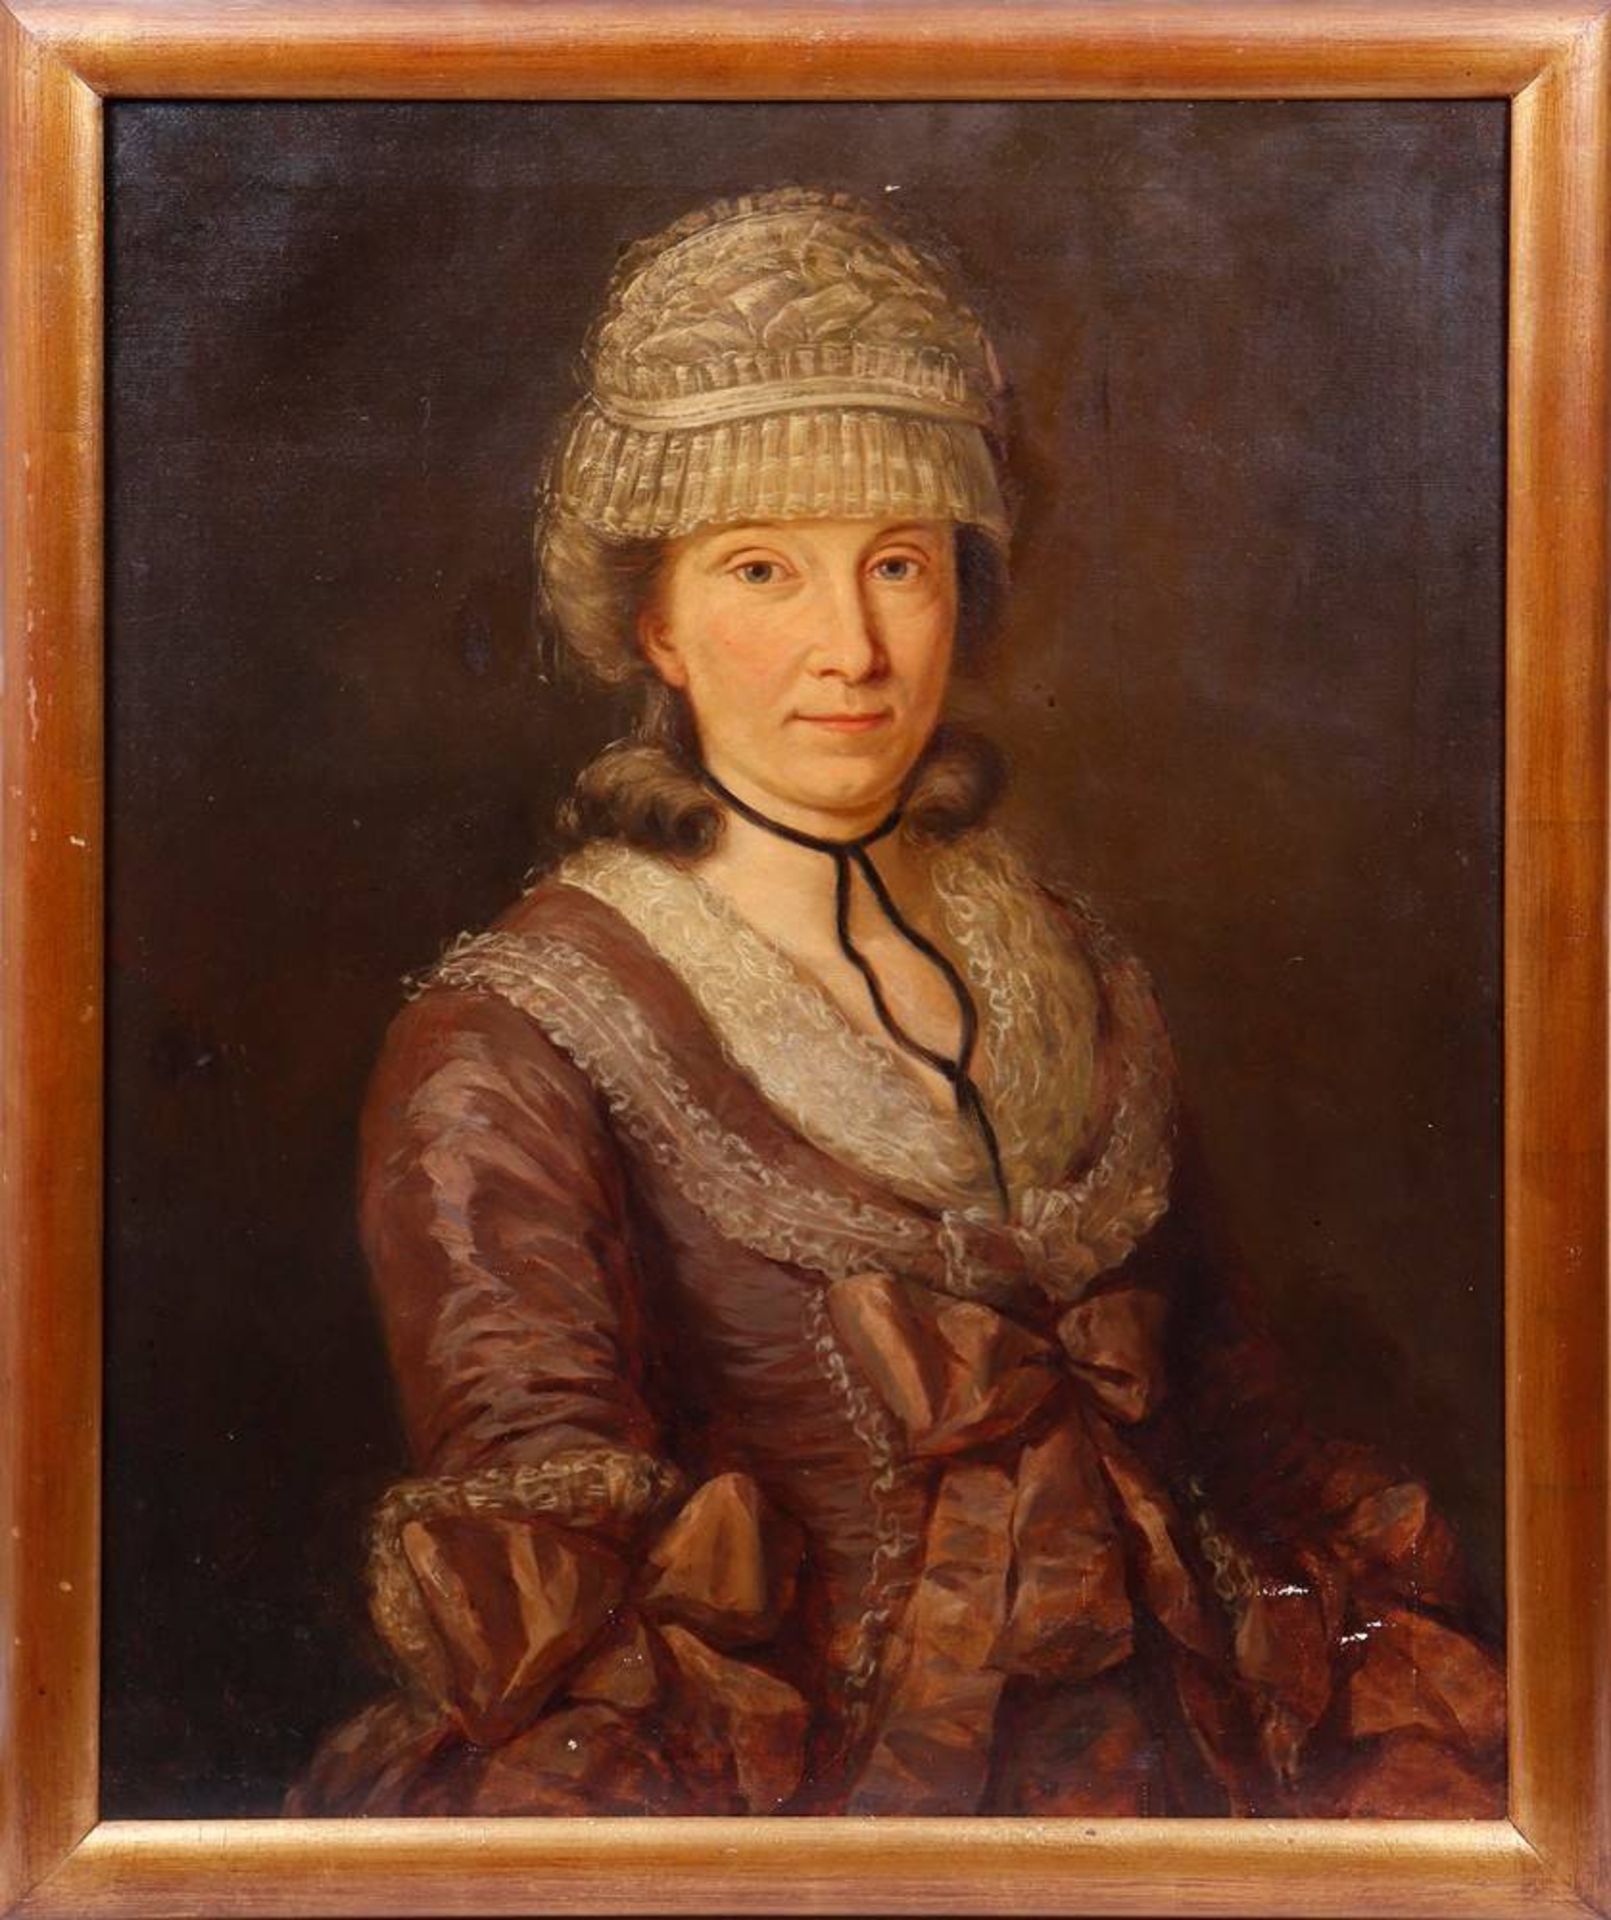 Portrait of a Lady with a Lace Bonnet, 18th/19th C.